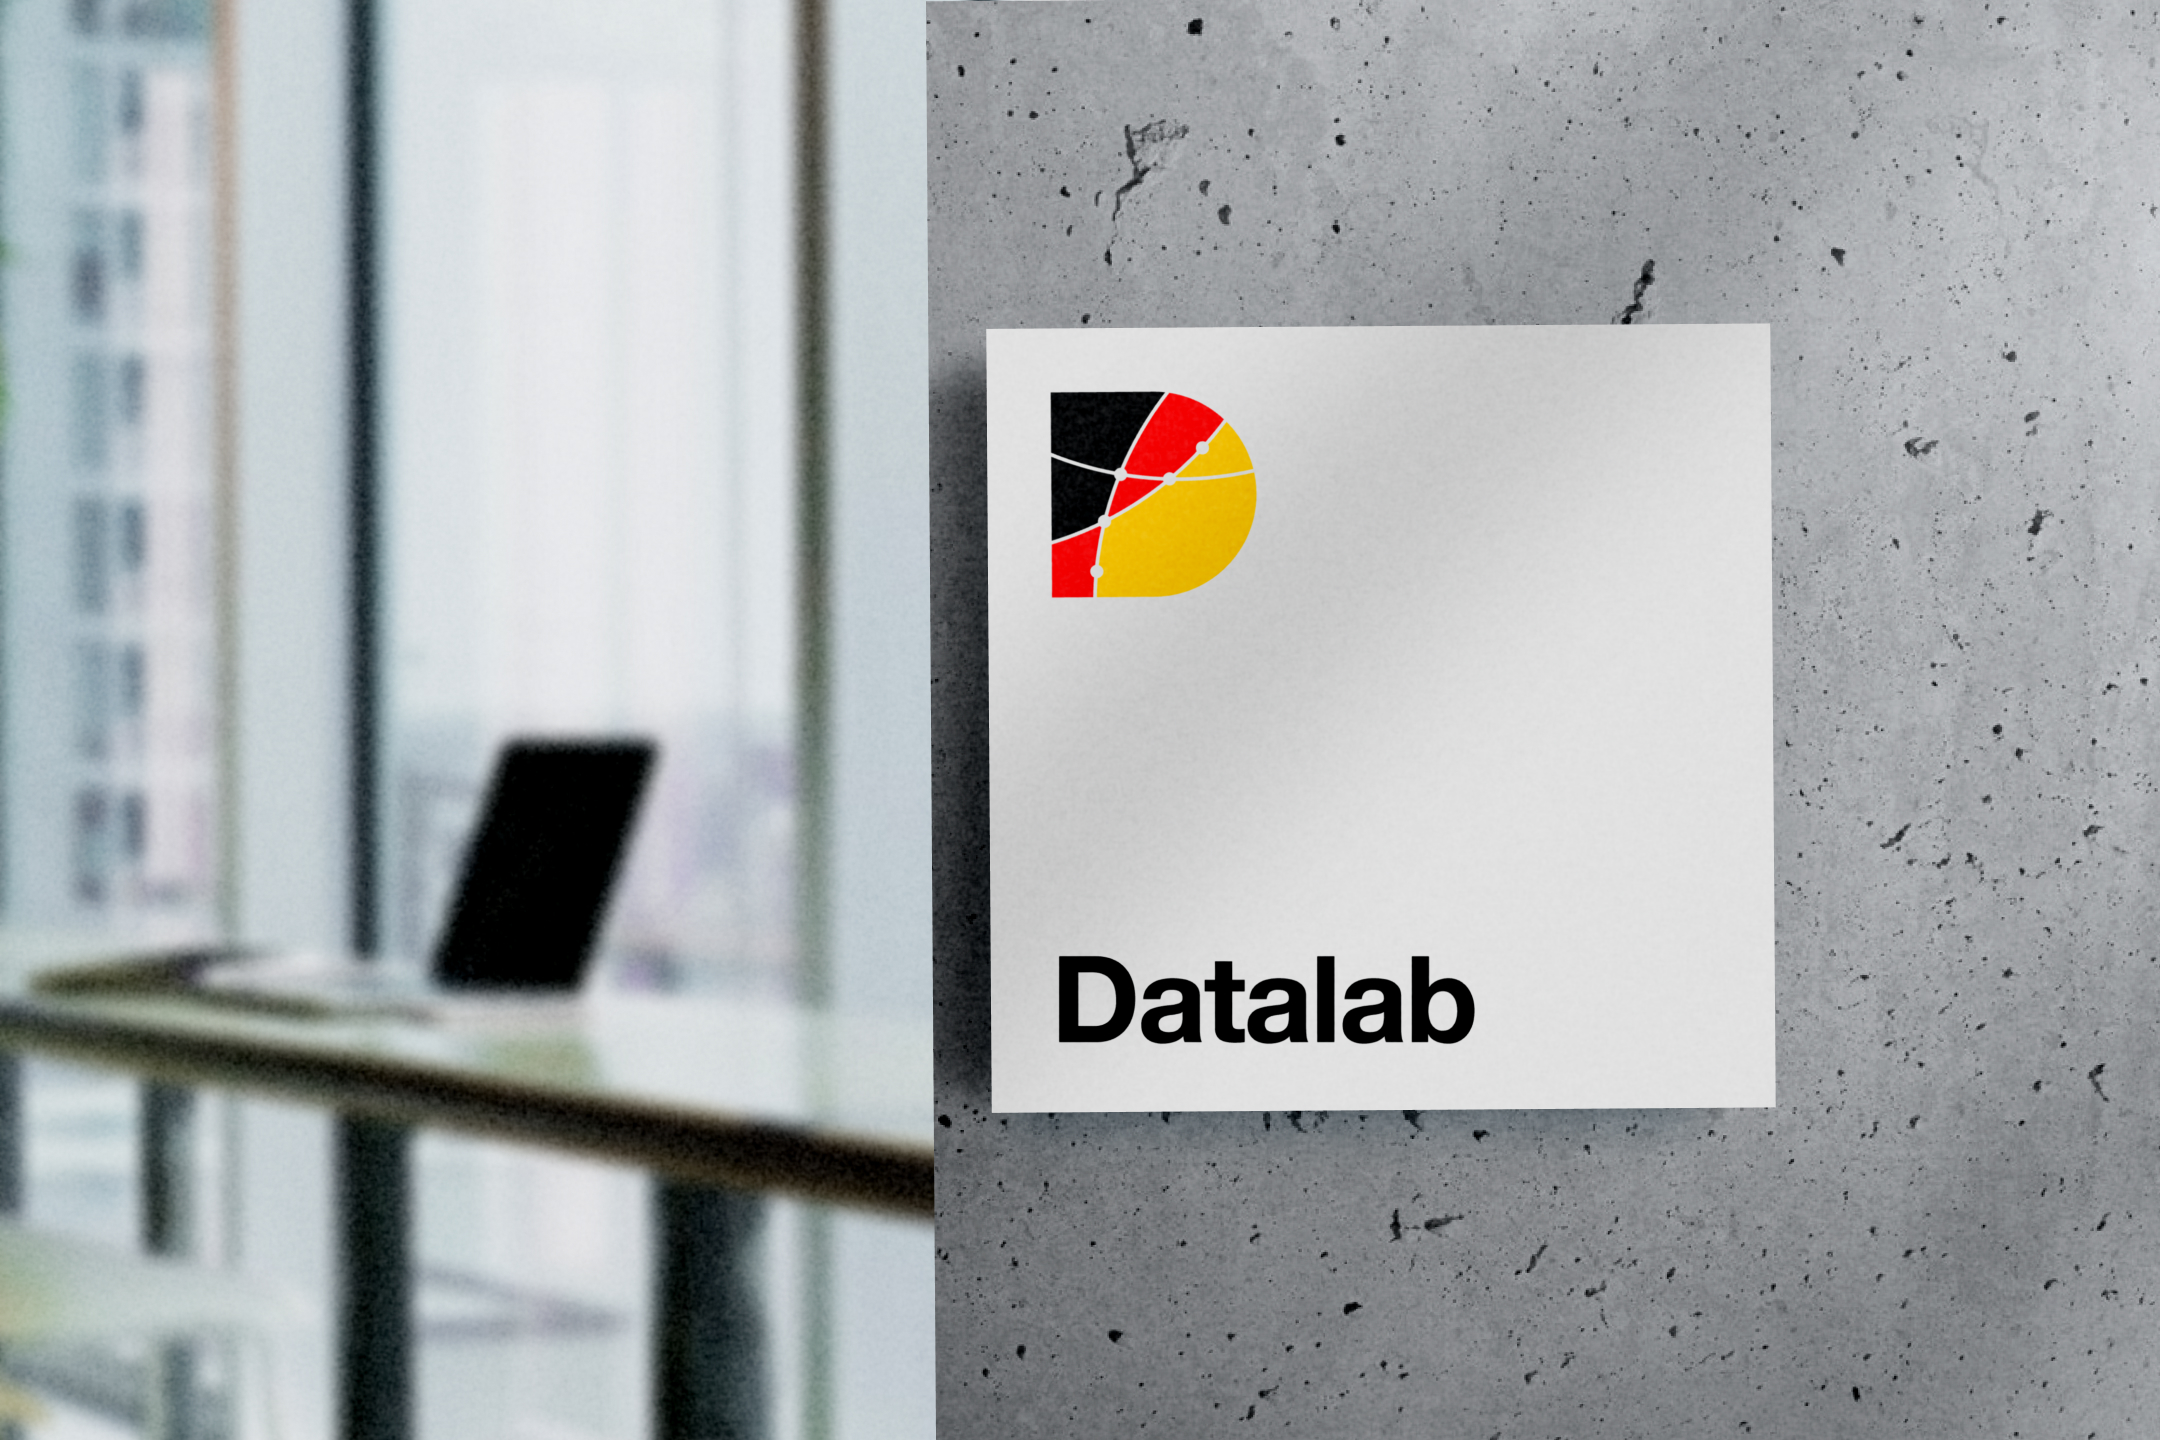 Datalab signage